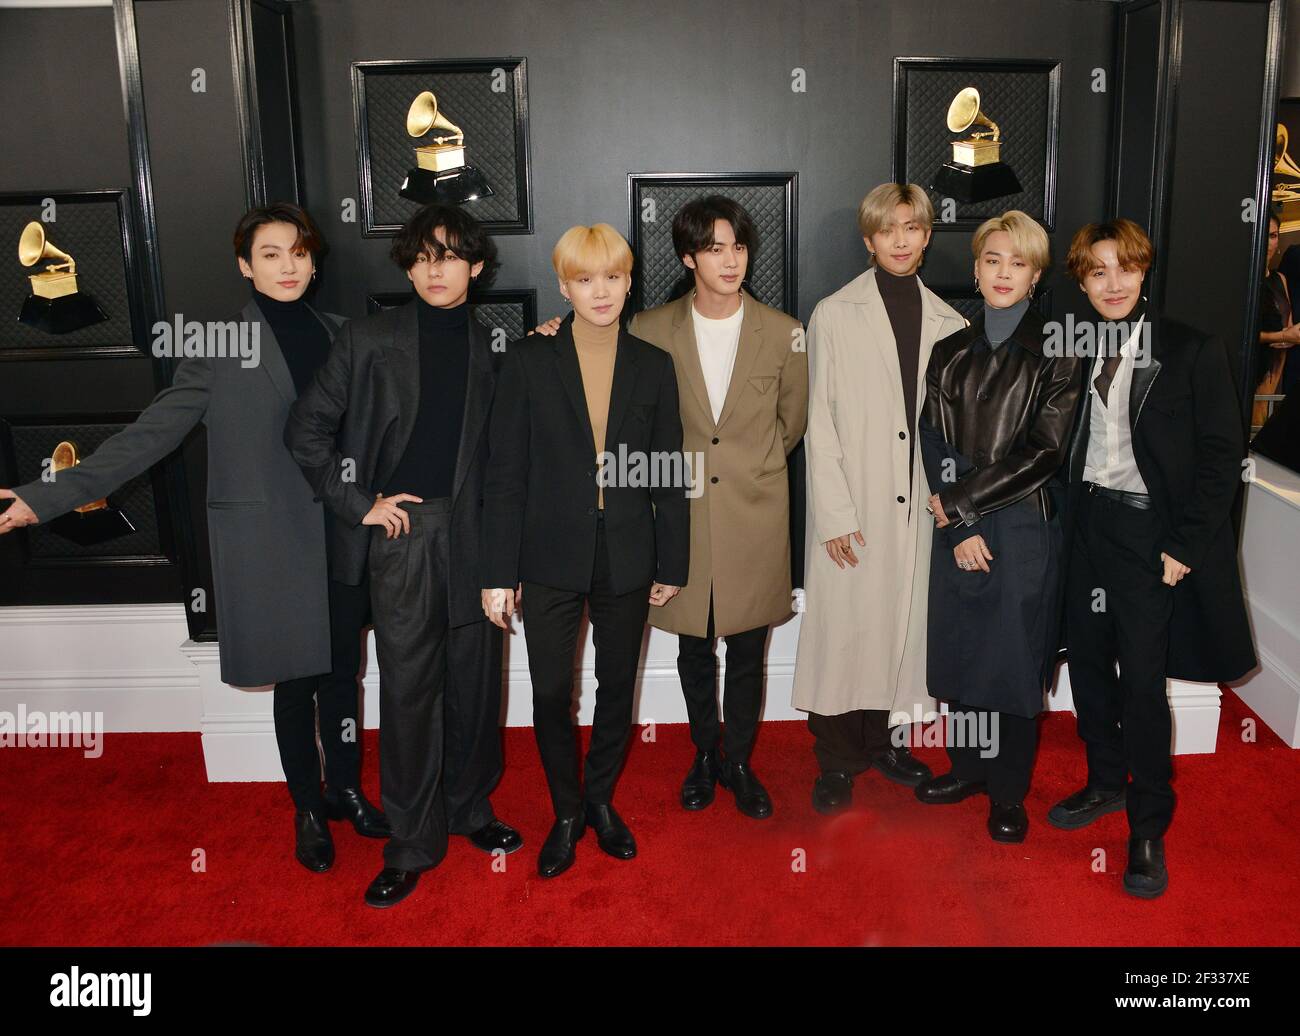 BTS Grammys 2022 Photos & Outfits: V, Jungkook, Jimin, RM, Suga, J